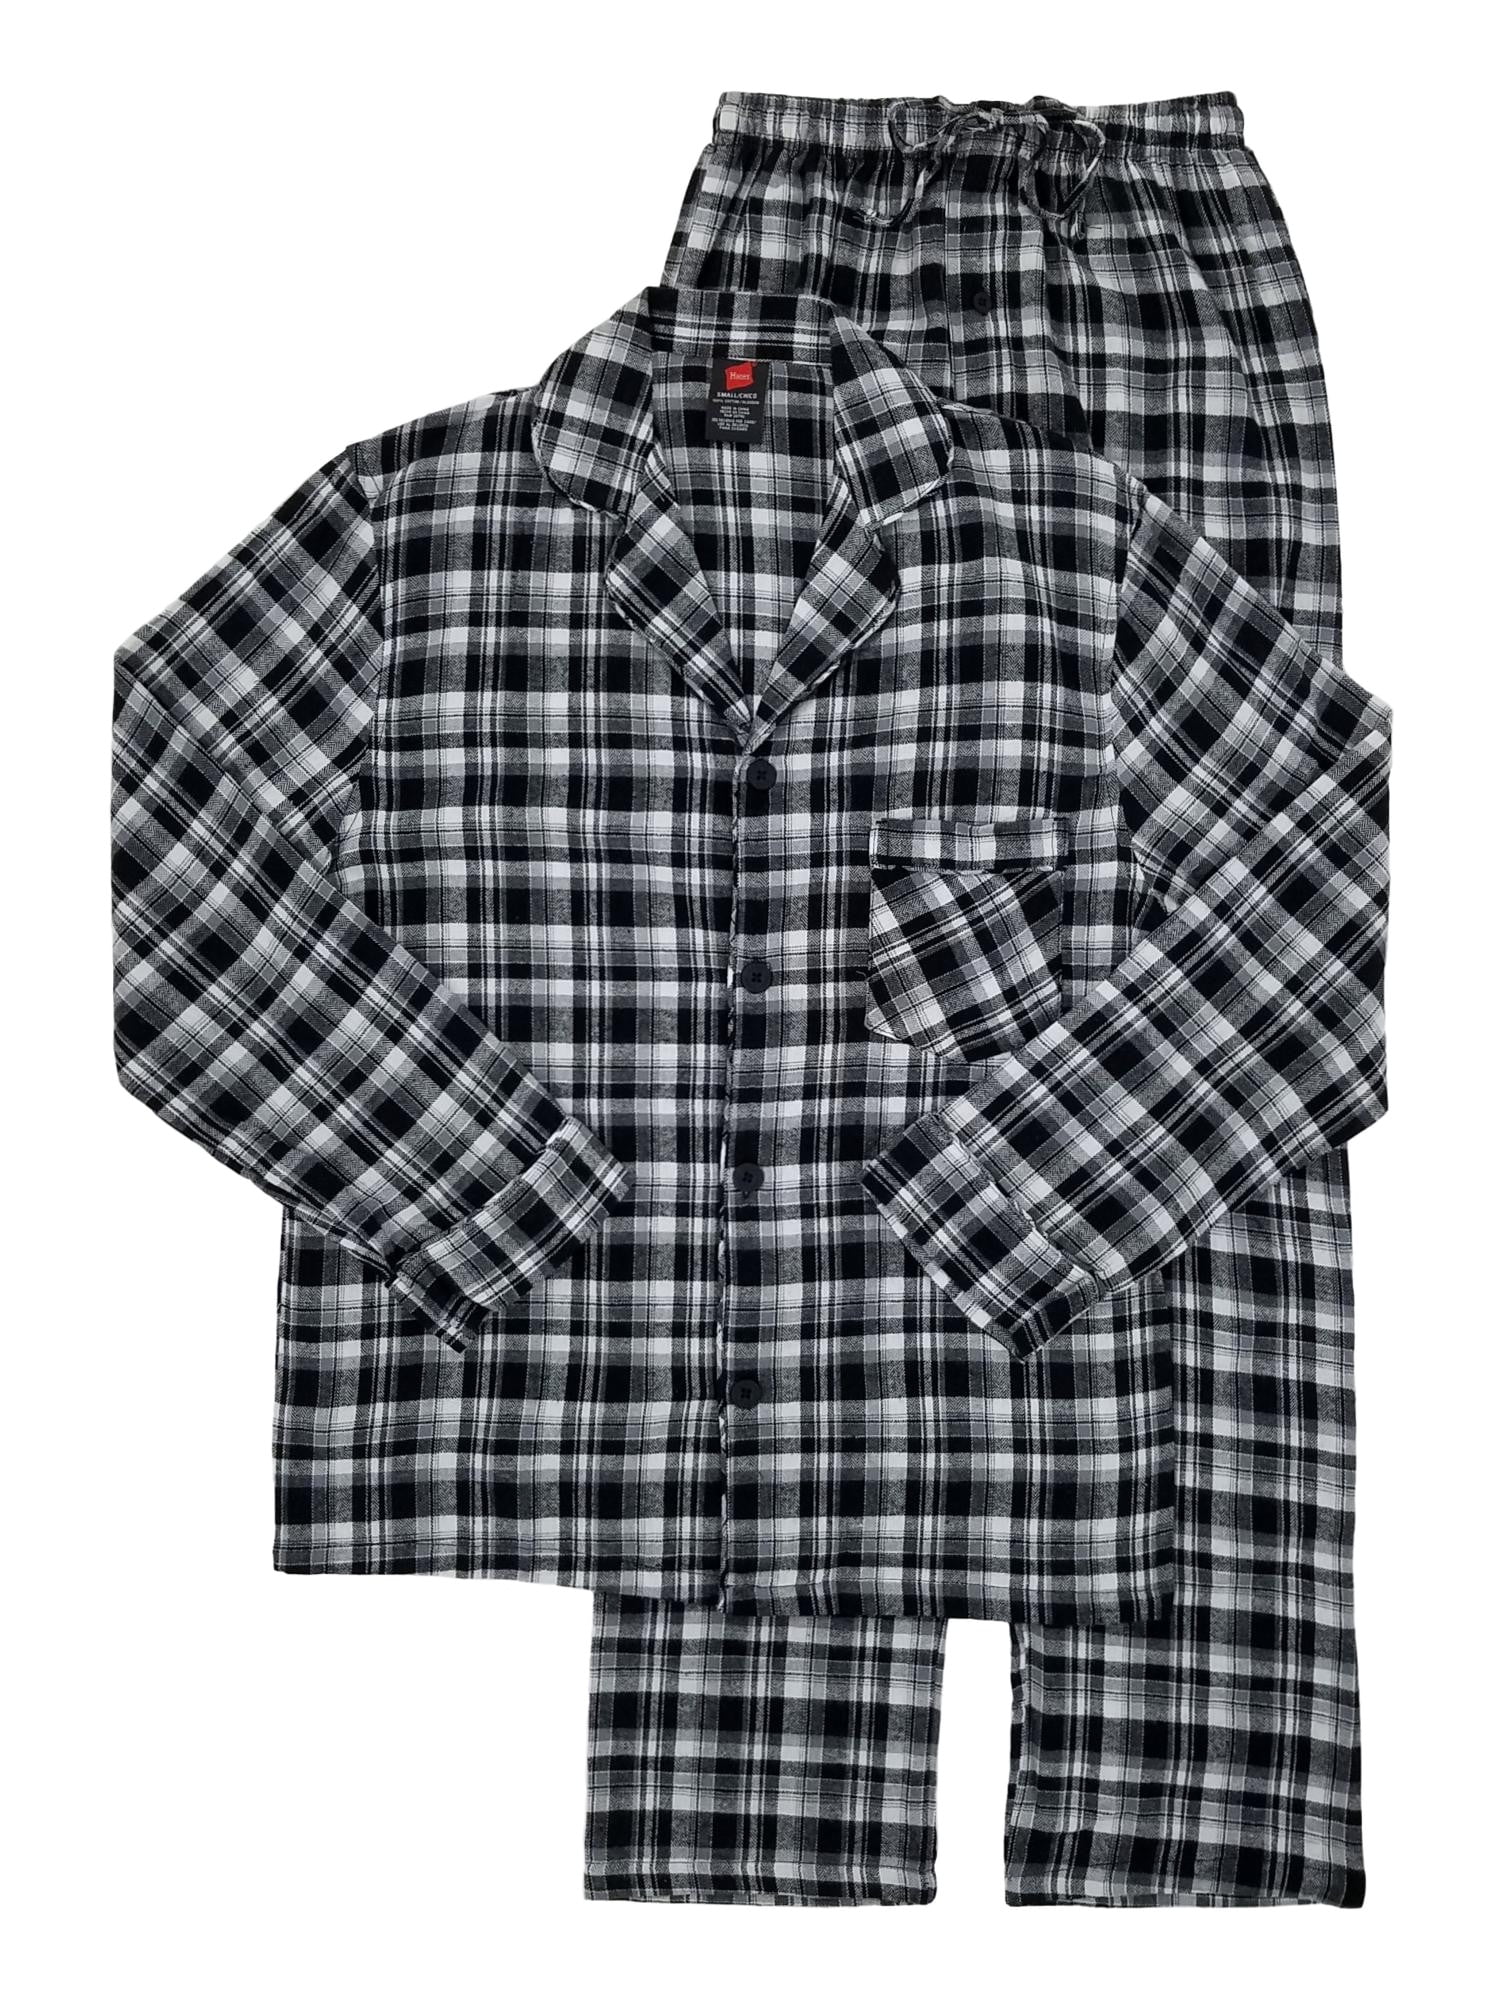 Hanes Men's and Big Men's Cotton Flannel Pajama Set, 2-Piece With Big ...